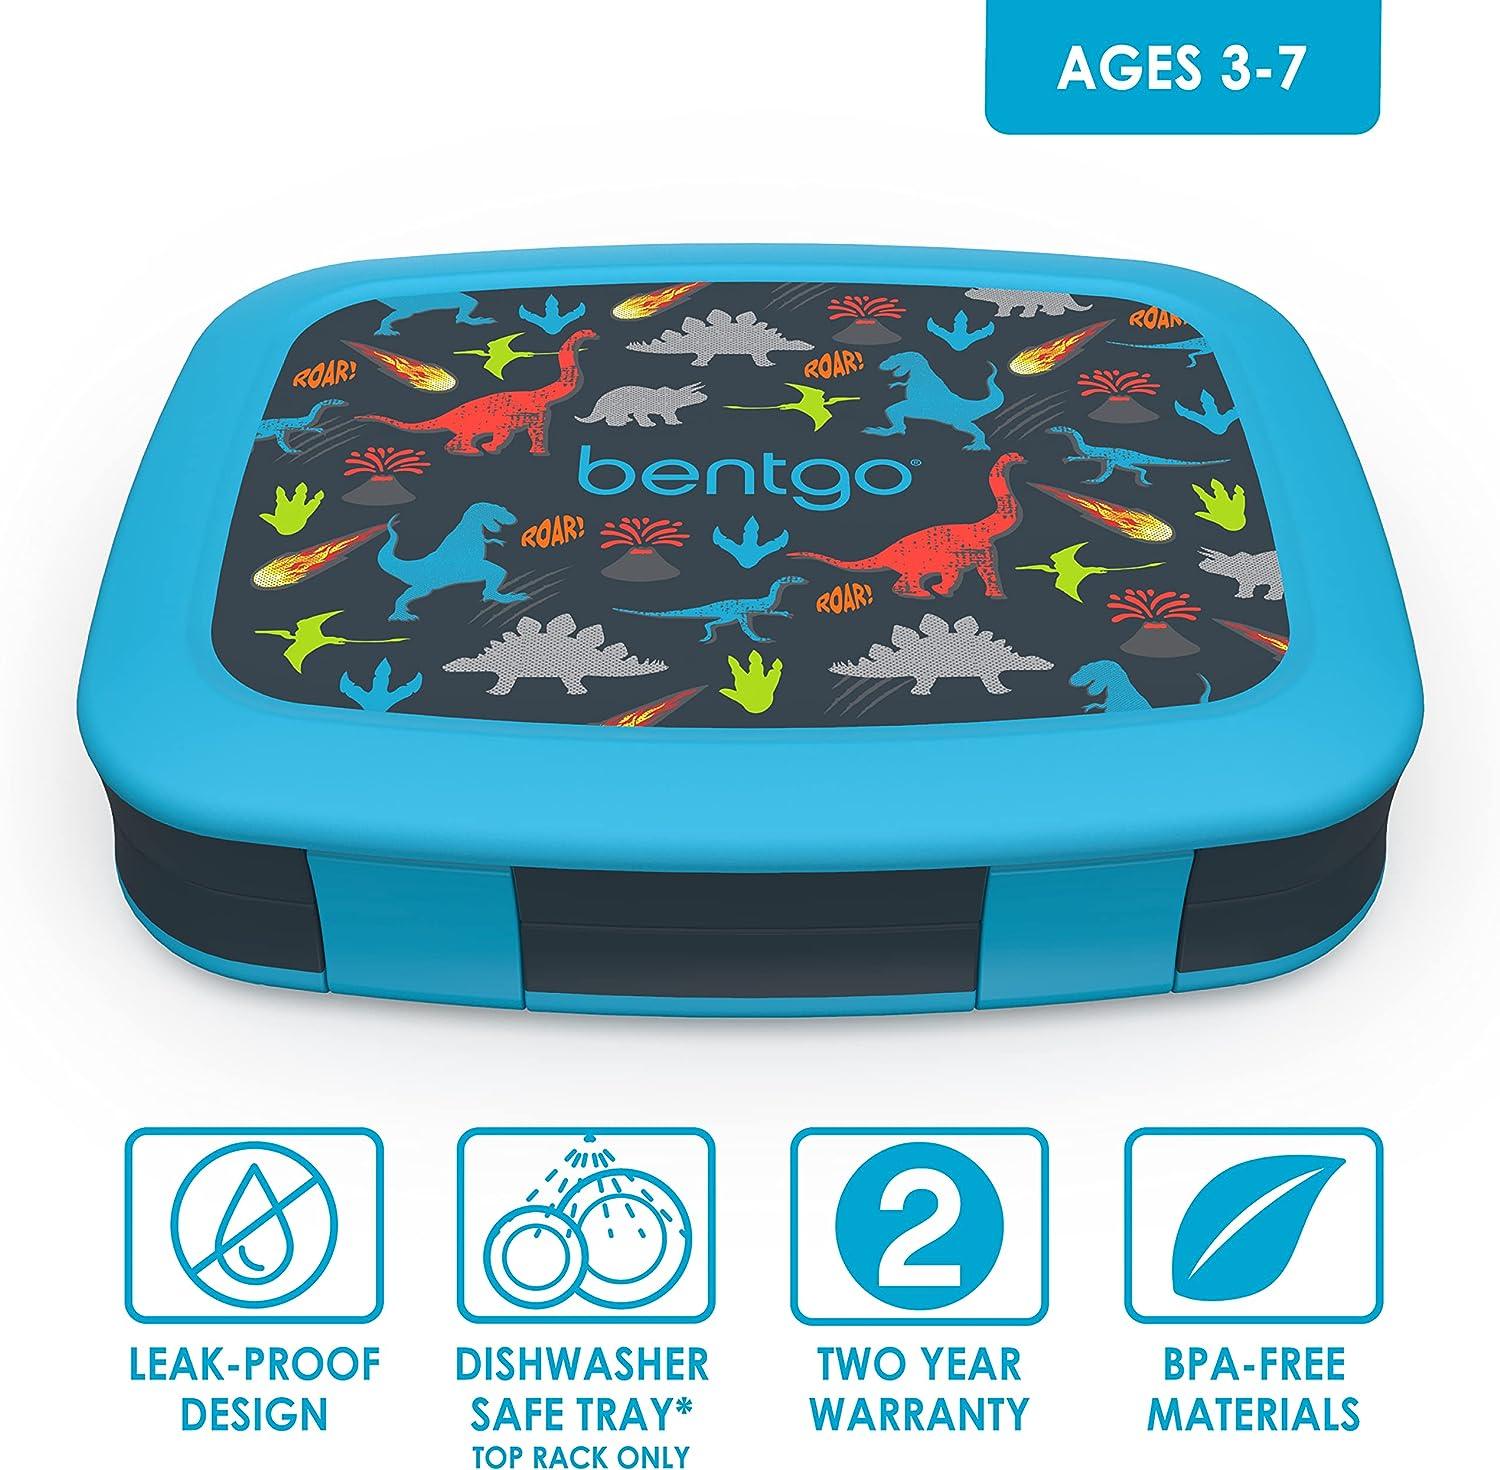  Bentgo® Kids Prints - Lonchera infantil a prueba de fugas, 5  compartimentos, estilo bento, tamaño de porción ideal para edades de 3 a 7  años, sin bisfenol A, material apto para